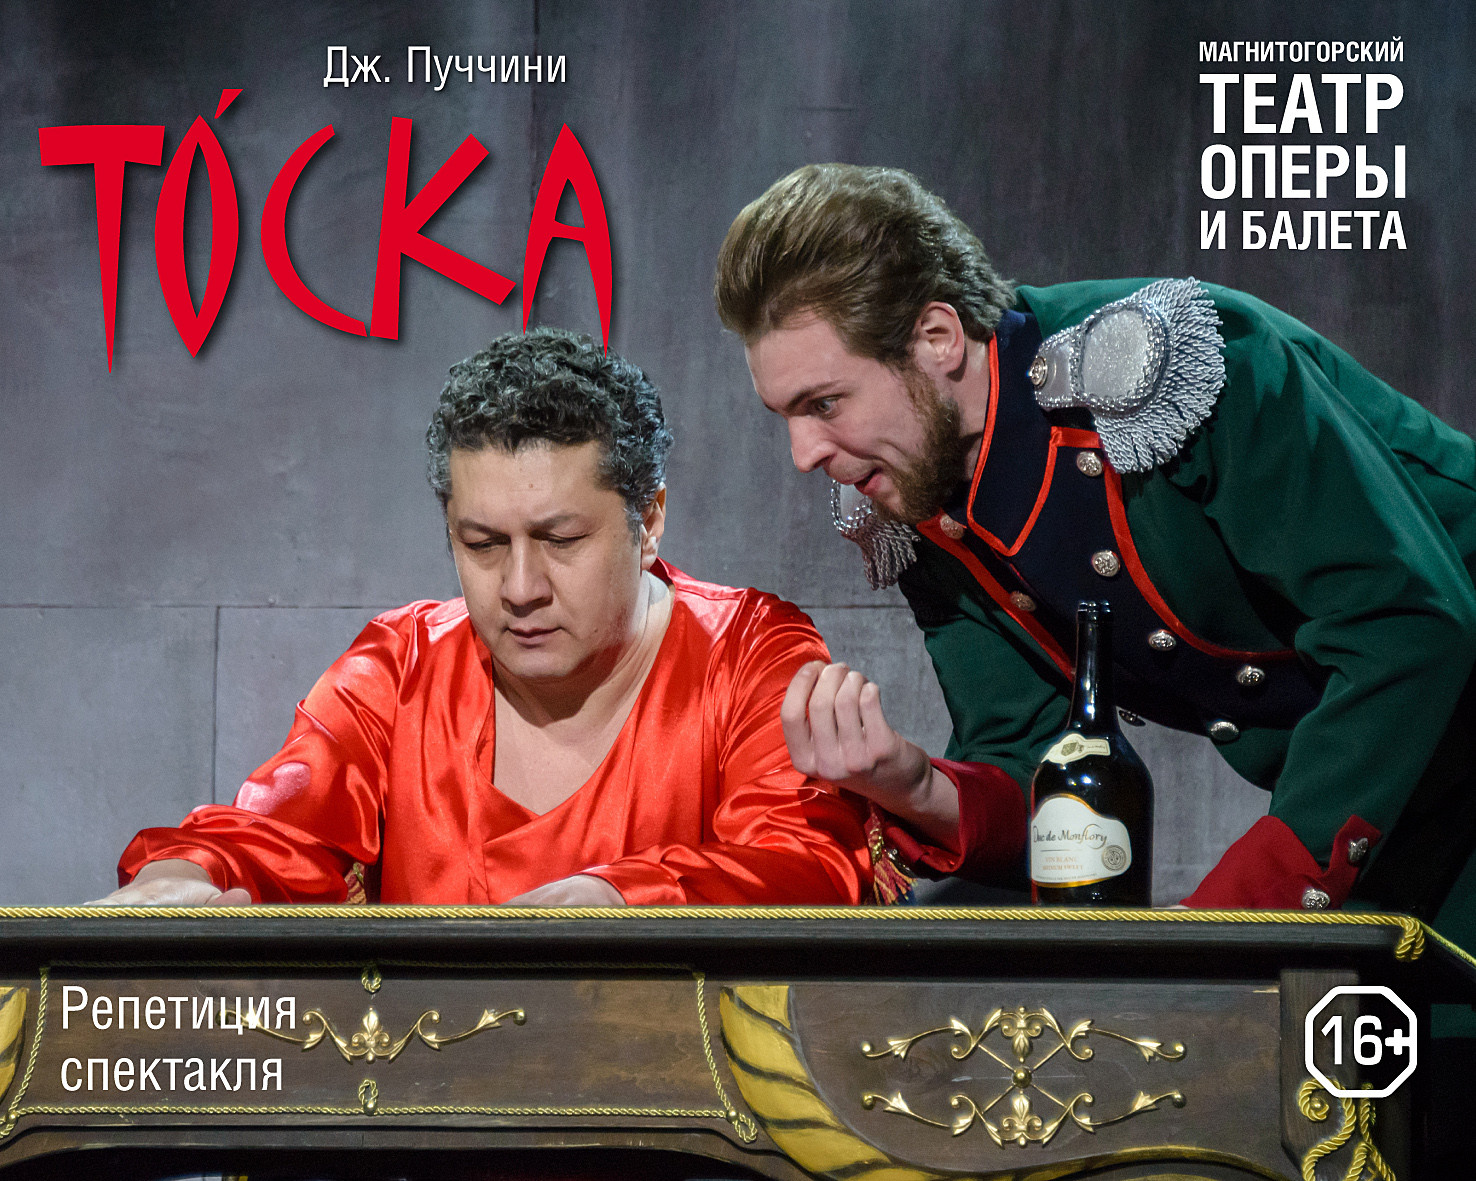 В Магнитогорском театре оперы и балета состоится премьера оперы «Тоска» на итальянском языке